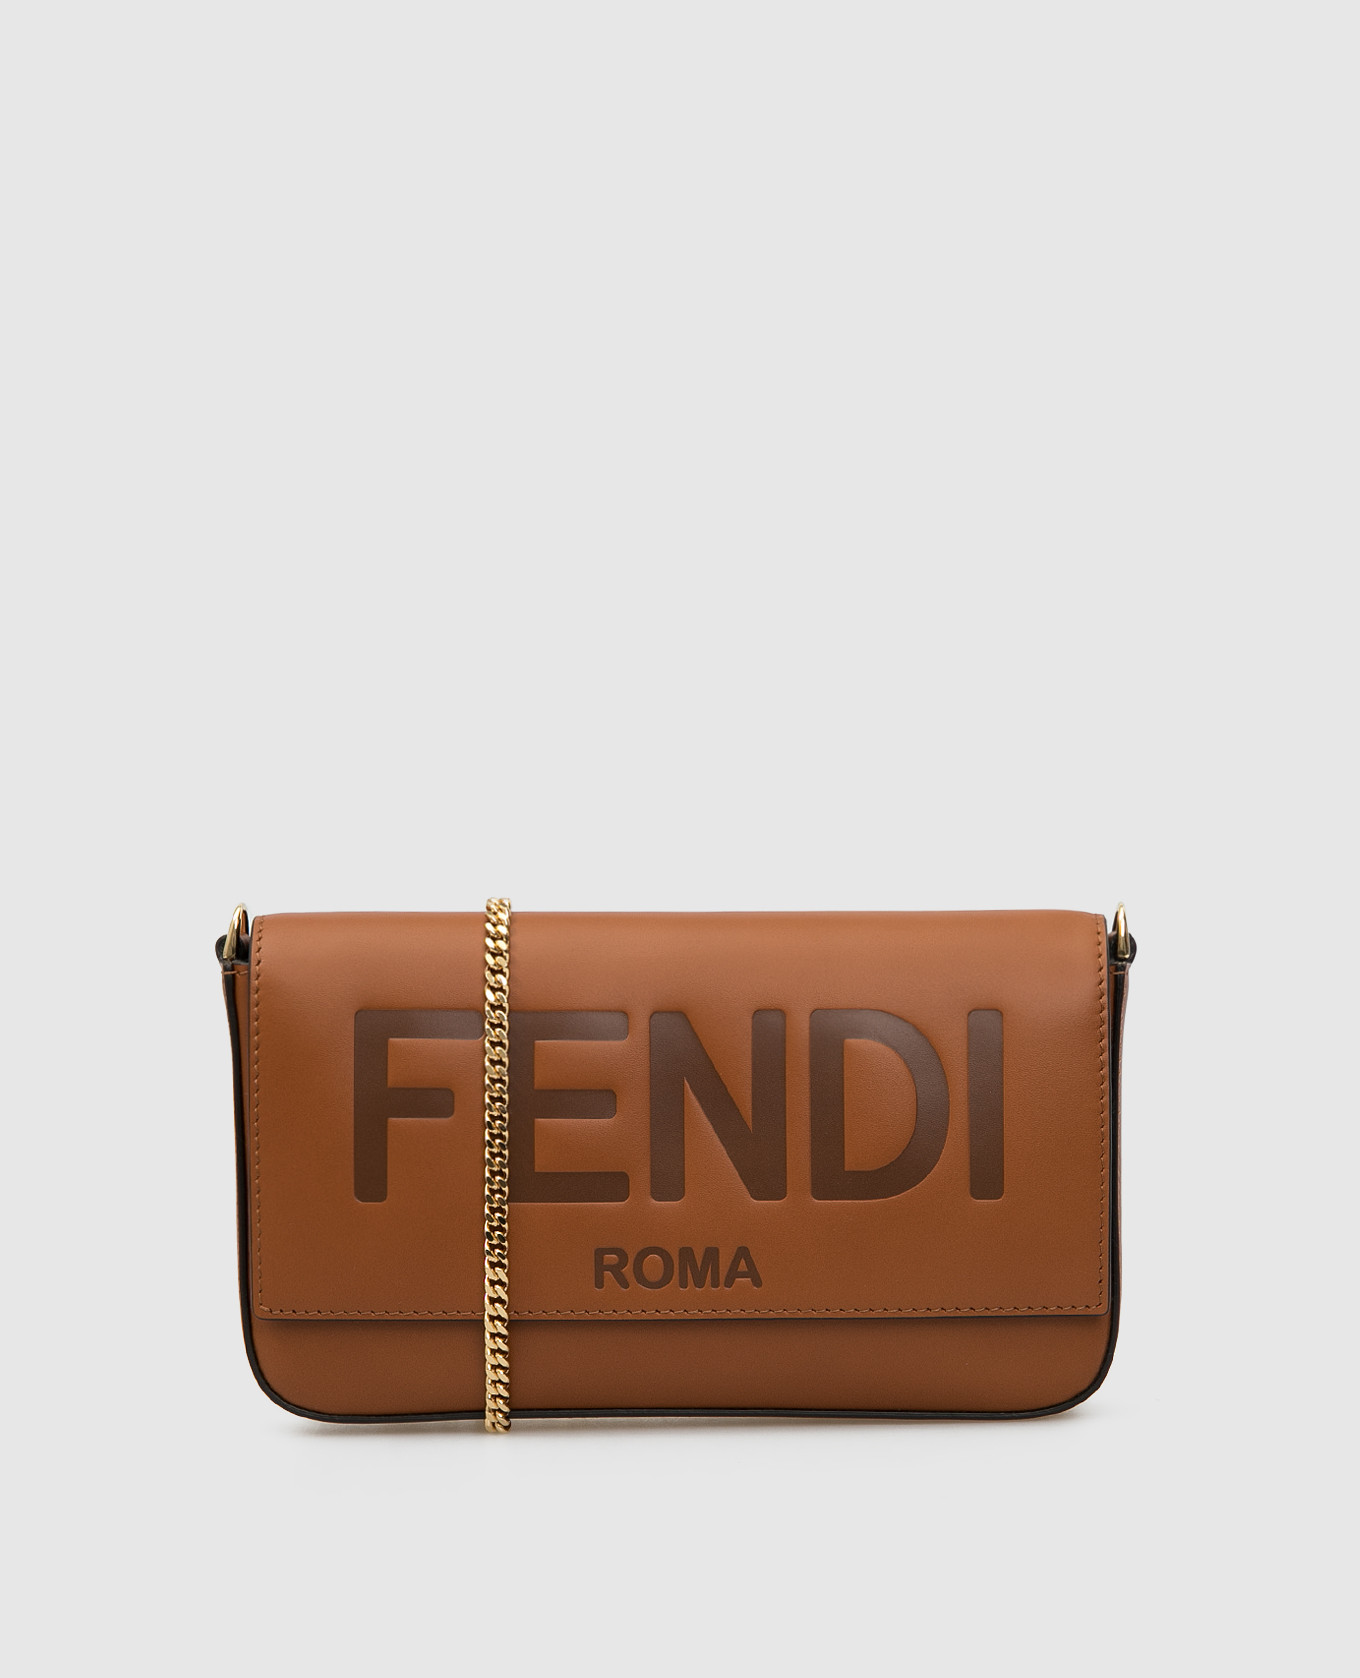 Светло-коричневый кожаный клатч с тиснением логотипа Fendi